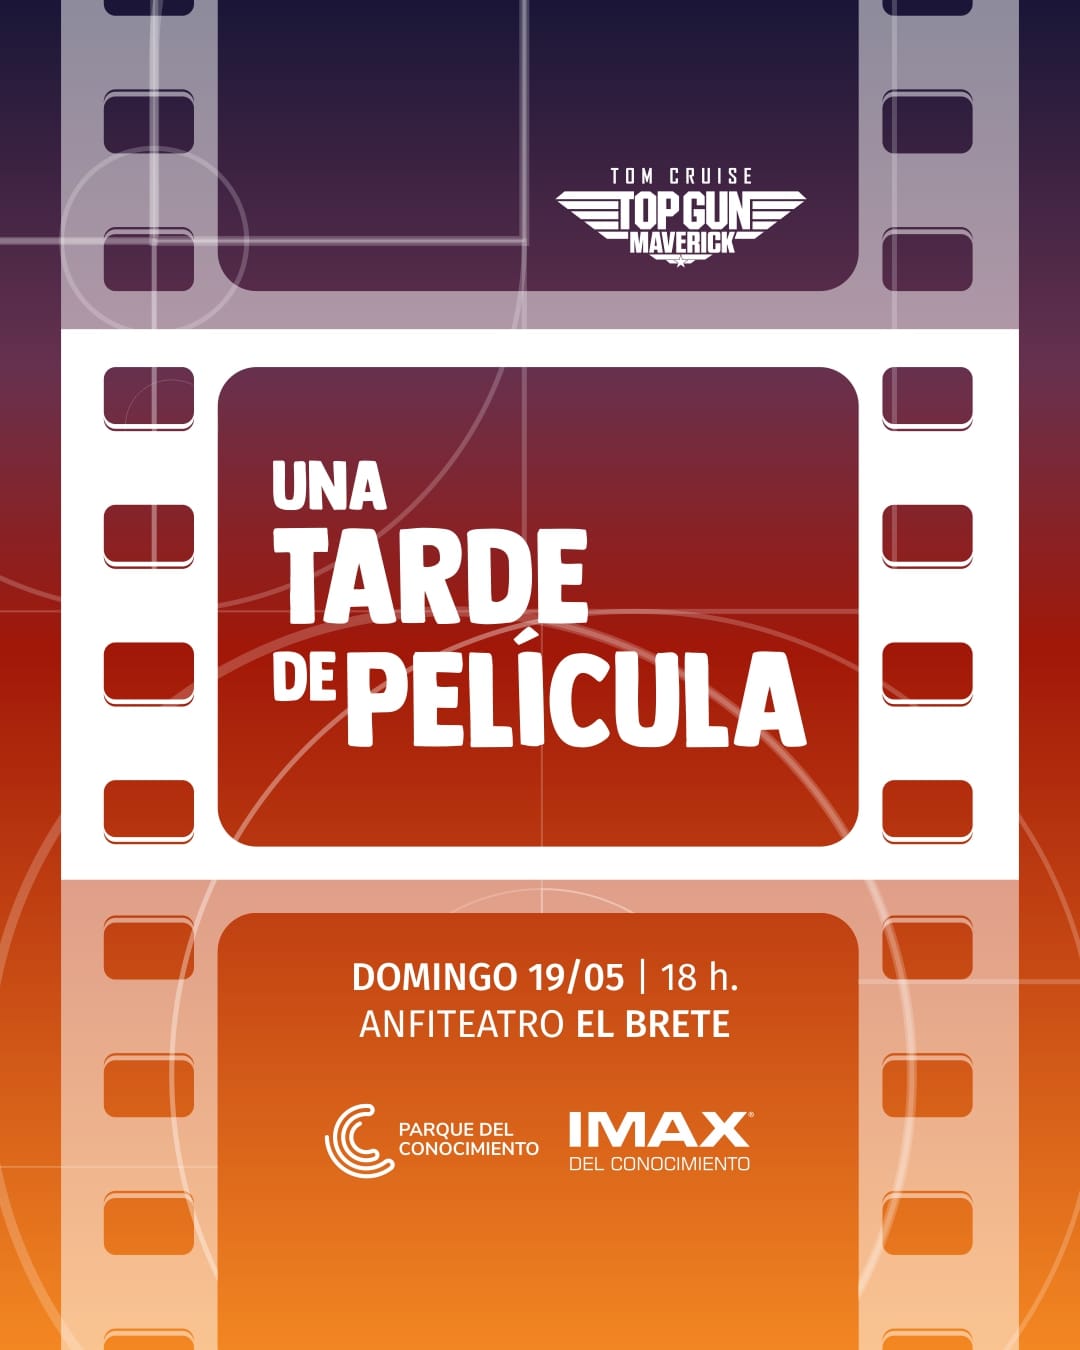 Las películas del IMAX llegan este domingo al Anfiteatro El Brete de Posadas